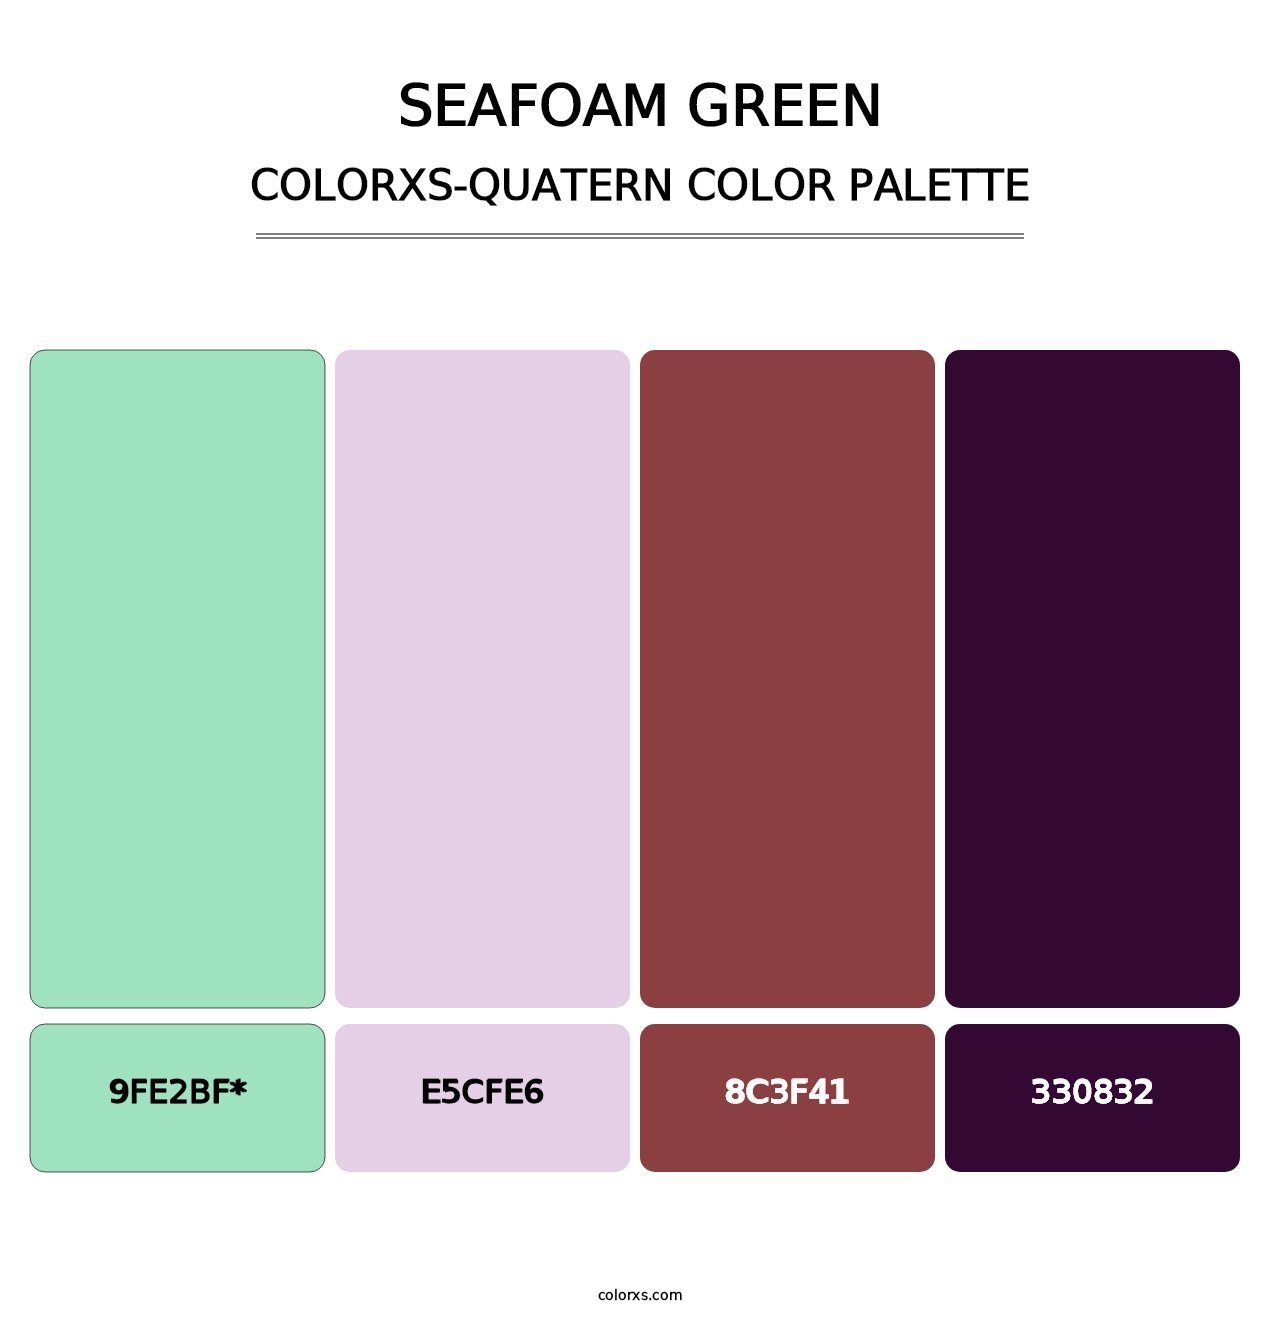 Seafoam Green - Colorxs Quatern Palette